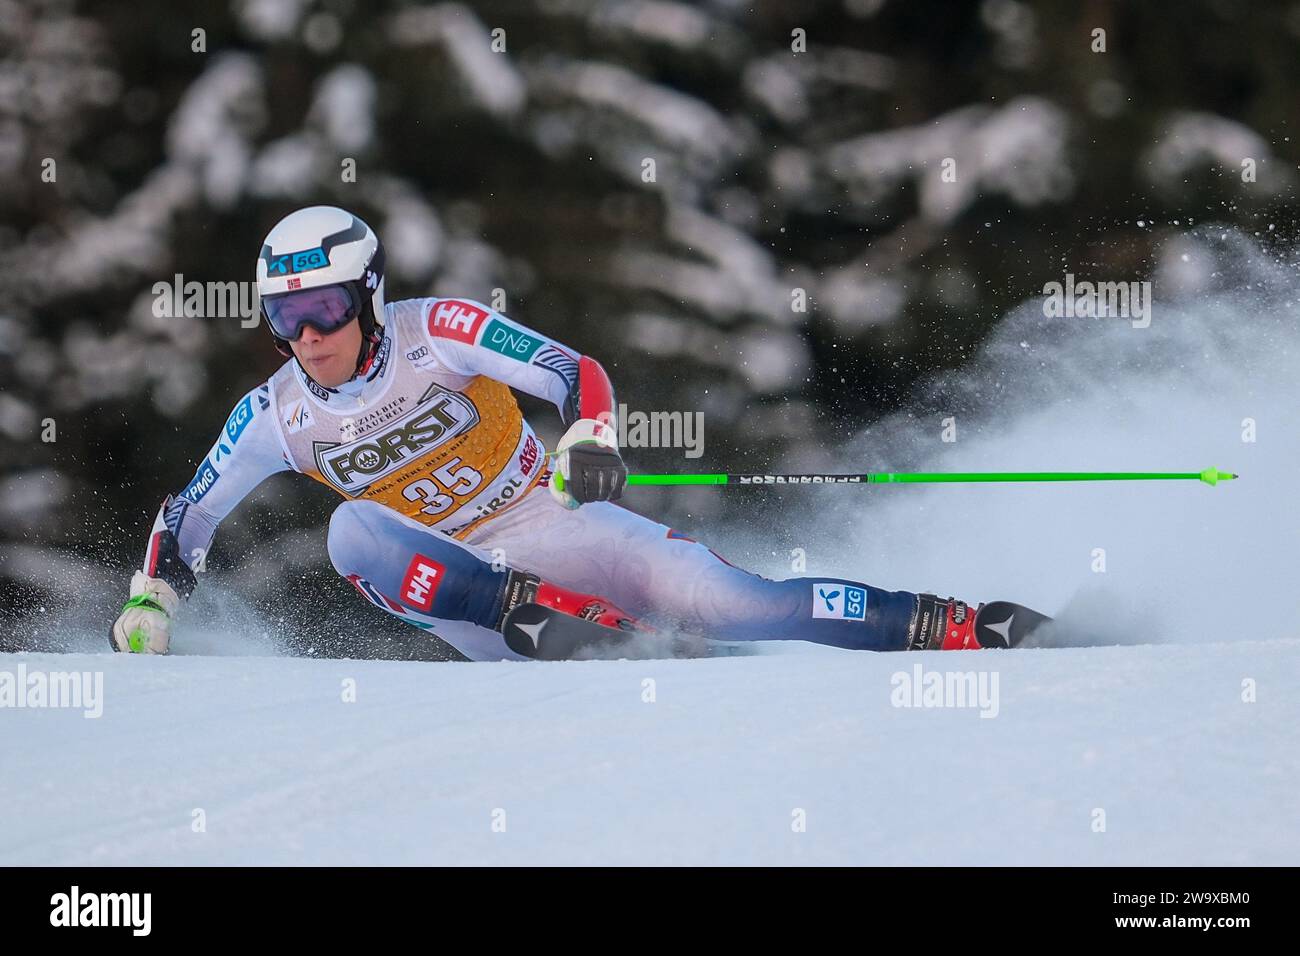 Fredrik Moeller (NOR) gareggia durante la Coppa del mondo di sci alpino Audi FIS, MenÕs Giant Slalom Race sulla pista Gran Risa, alta Badia il 17 dicembre 2023, Foto Stock